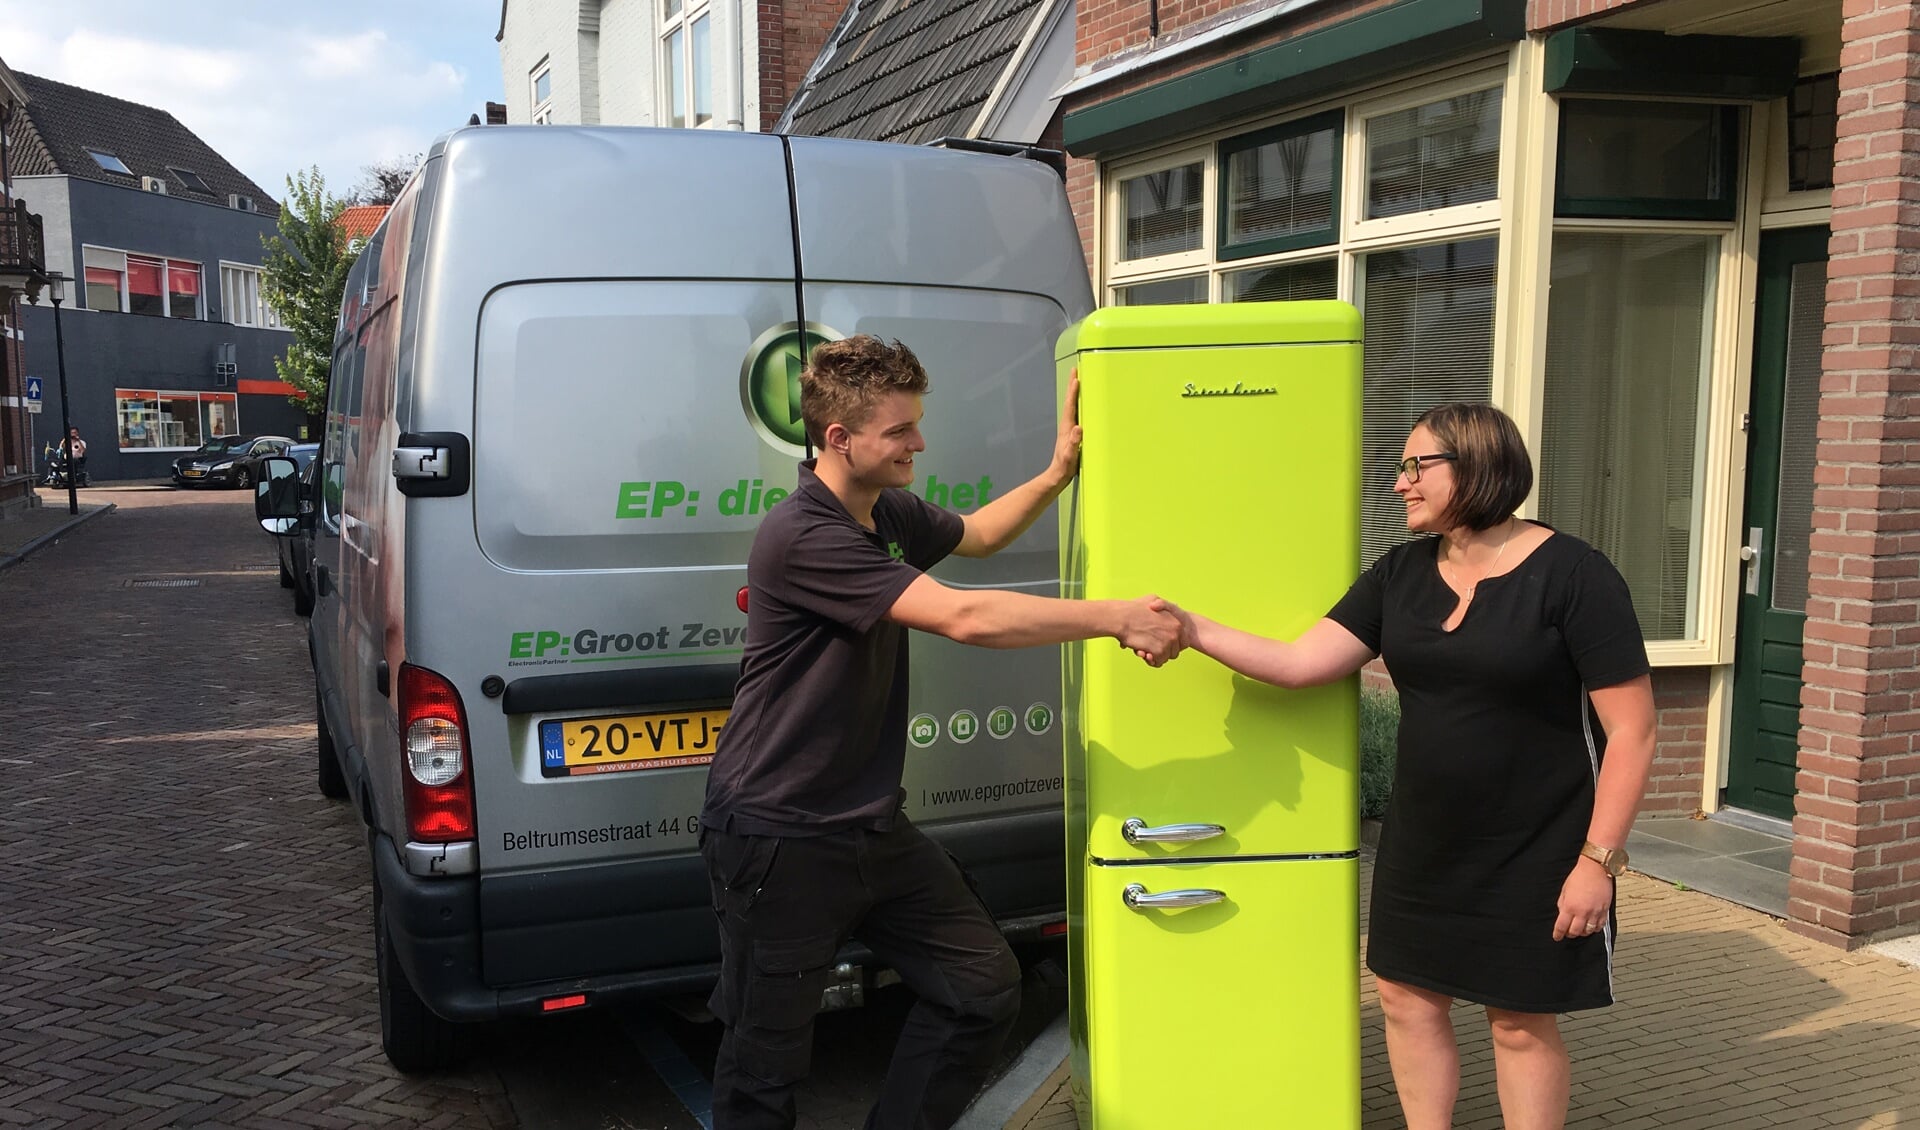 Hugo Bomers van EP: Groot Zevert overhandigt de koelkast aan Susanne Wassink. Foto: PR